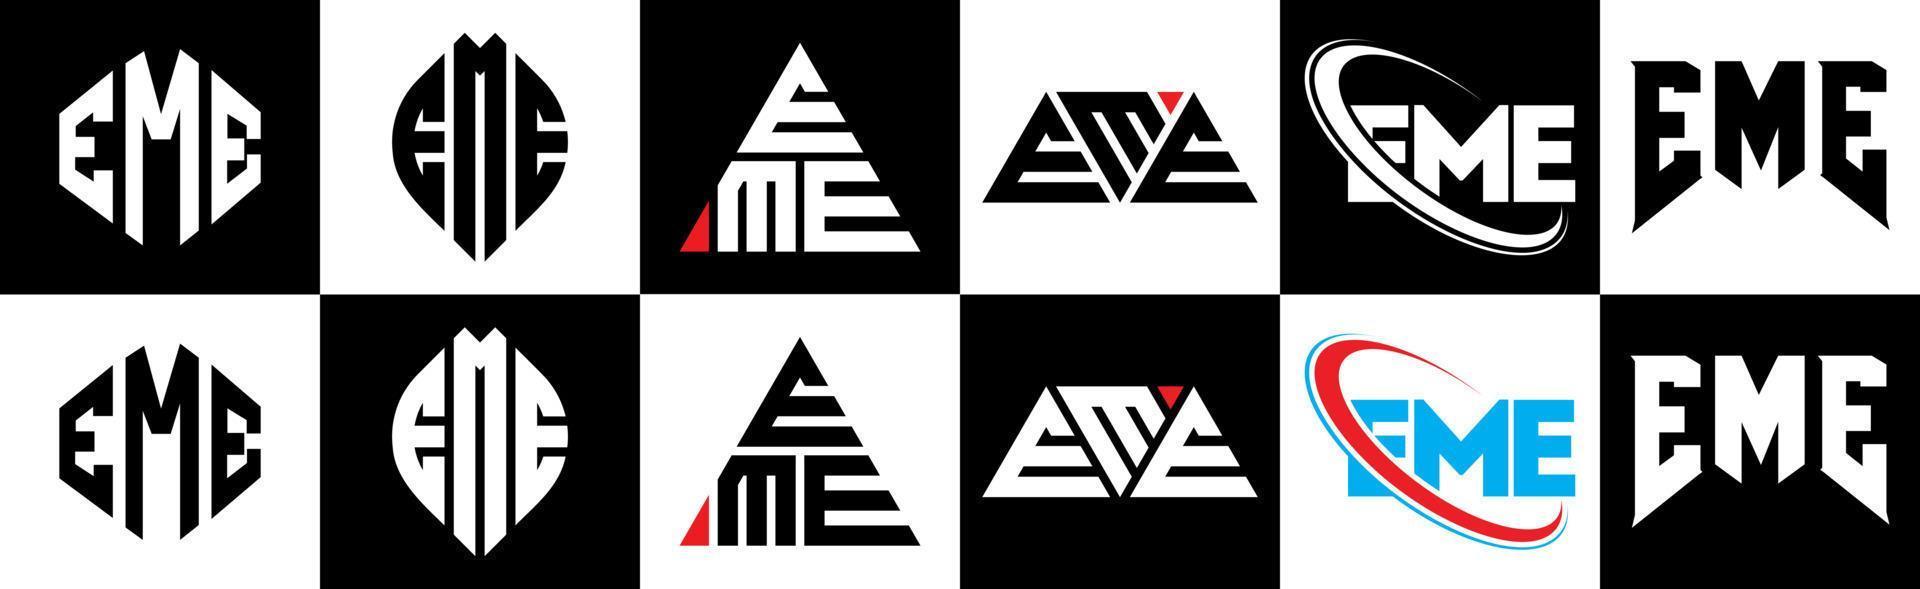 Eme-Buchstaben-Logo-Design in sechs Stilen. Eme-Polygon, Kreis, Dreieck, Sechseck, flacher und einfacher Stil mit schwarz-weißem Buchstabenlogo in einer Zeichenfläche. Eme minimalistisches und klassisches Logo vektor